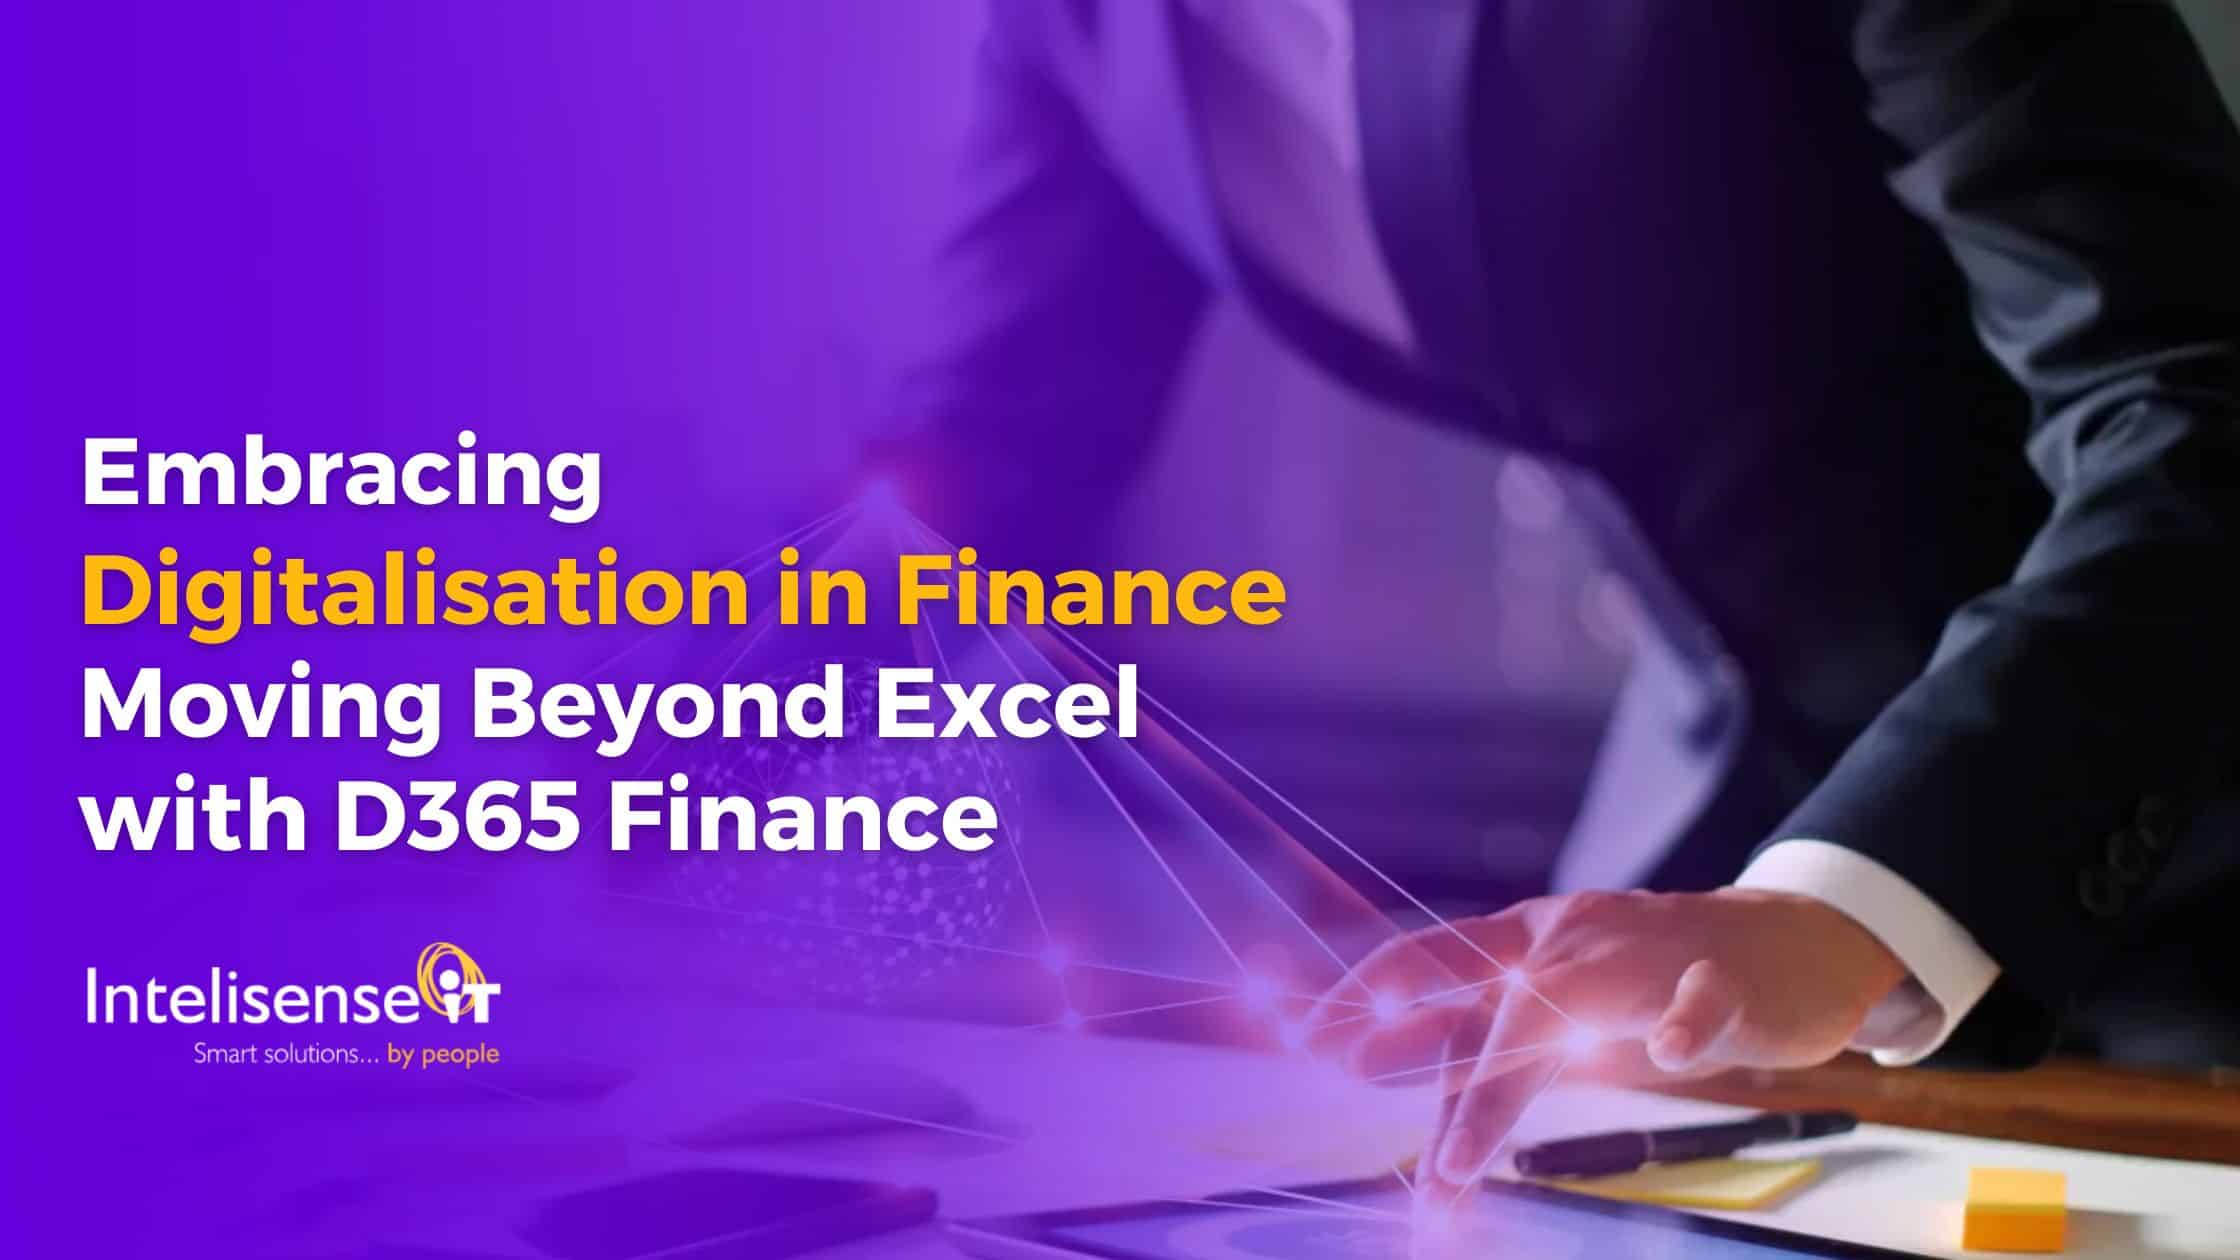 D365 Finance